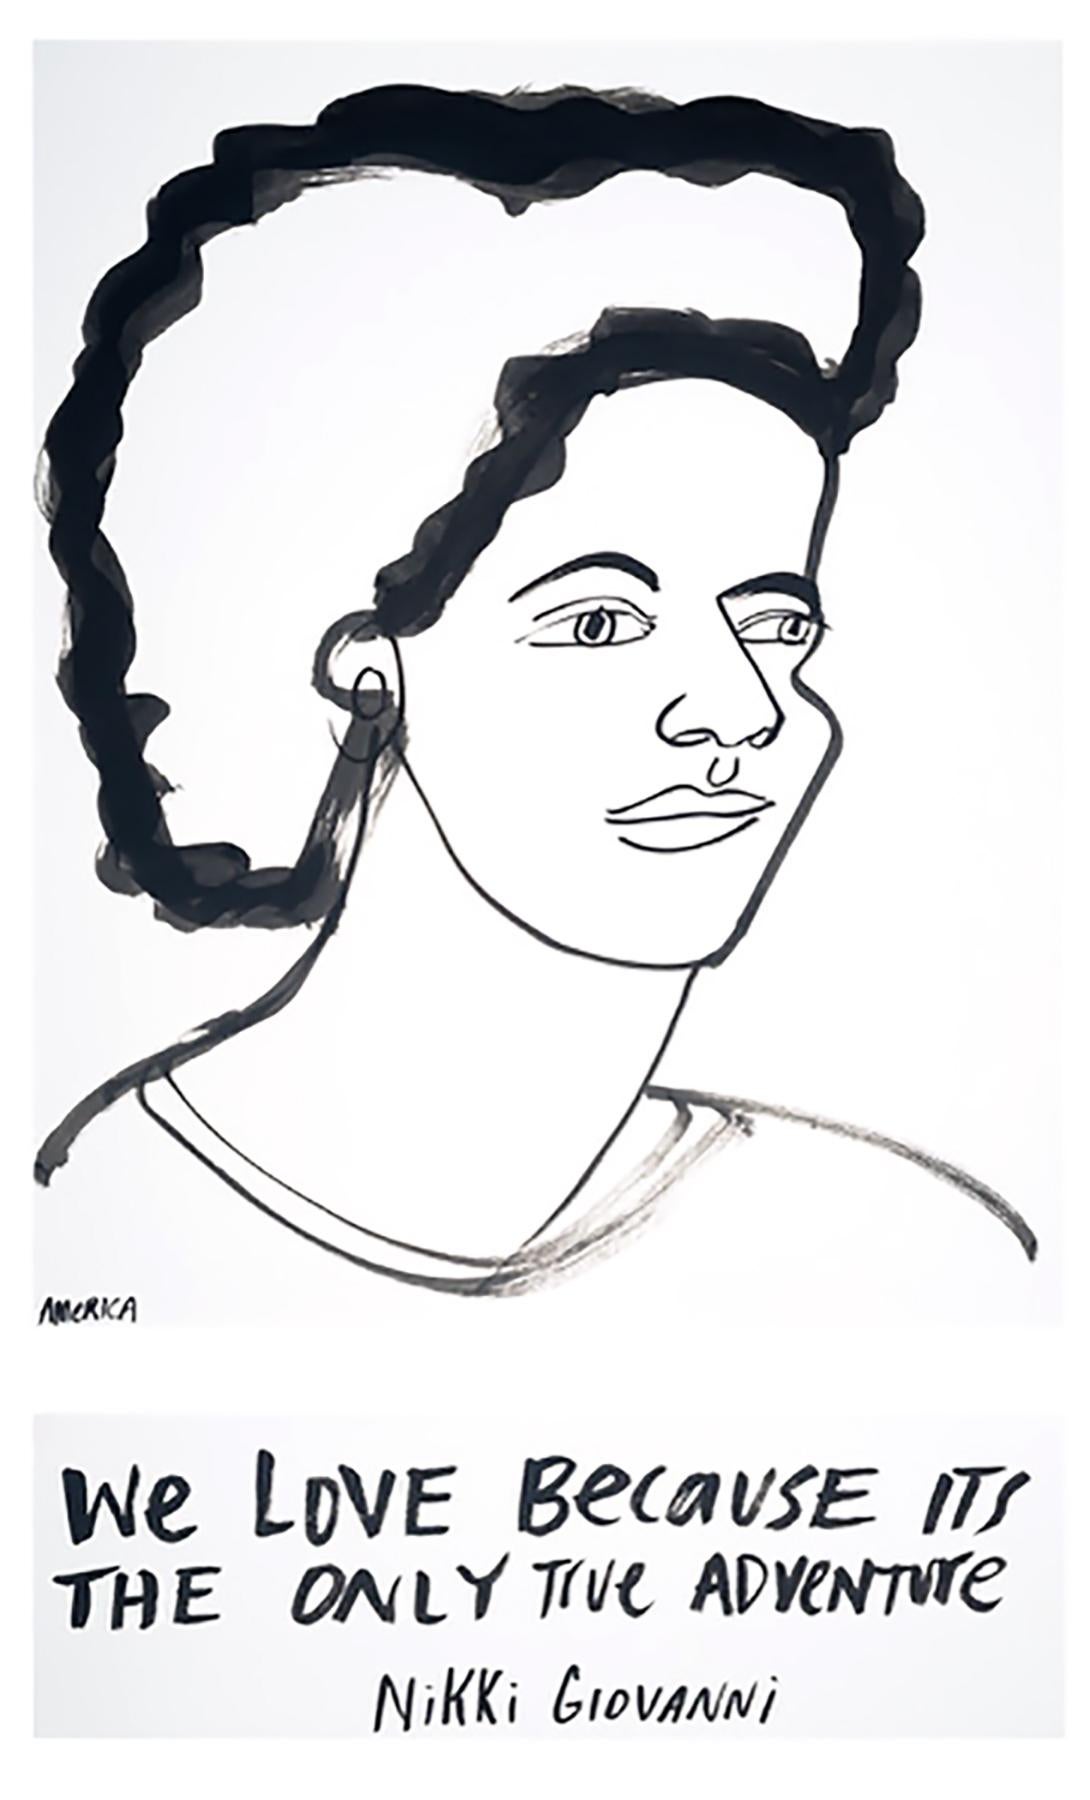 Une partie de chaque vente sera reversée à l'ACLU et à la NAACP

La galerie JoAnne Artman est fière de présenter la nouvelle série d'America Martin "I See Heroes Everywhere".

Abordant le thème de l'héroïsme, Martin se concentre sur des thèmes